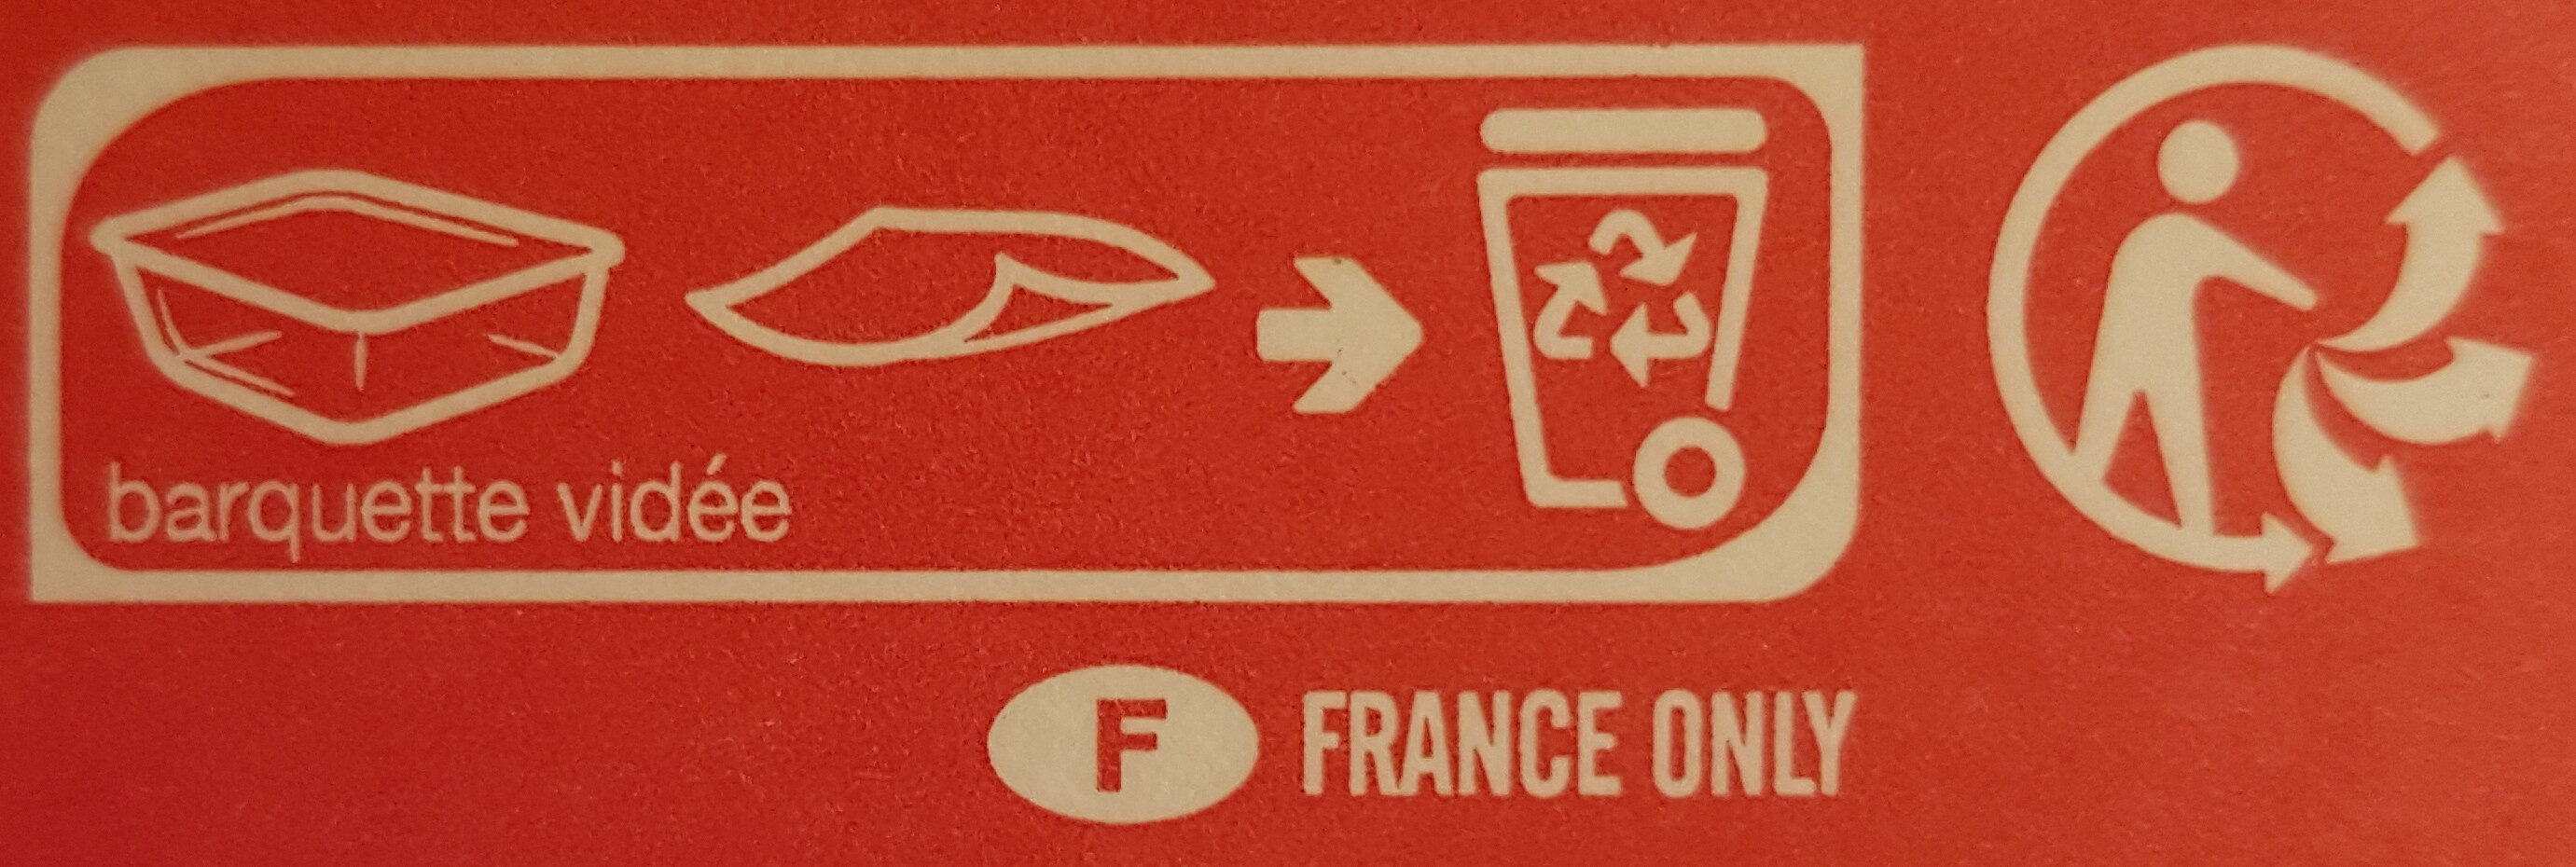 Gnocchis au chèvre et aux épinards et à la sauce tomate - Instruction de recyclage et/ou informations d'emballage